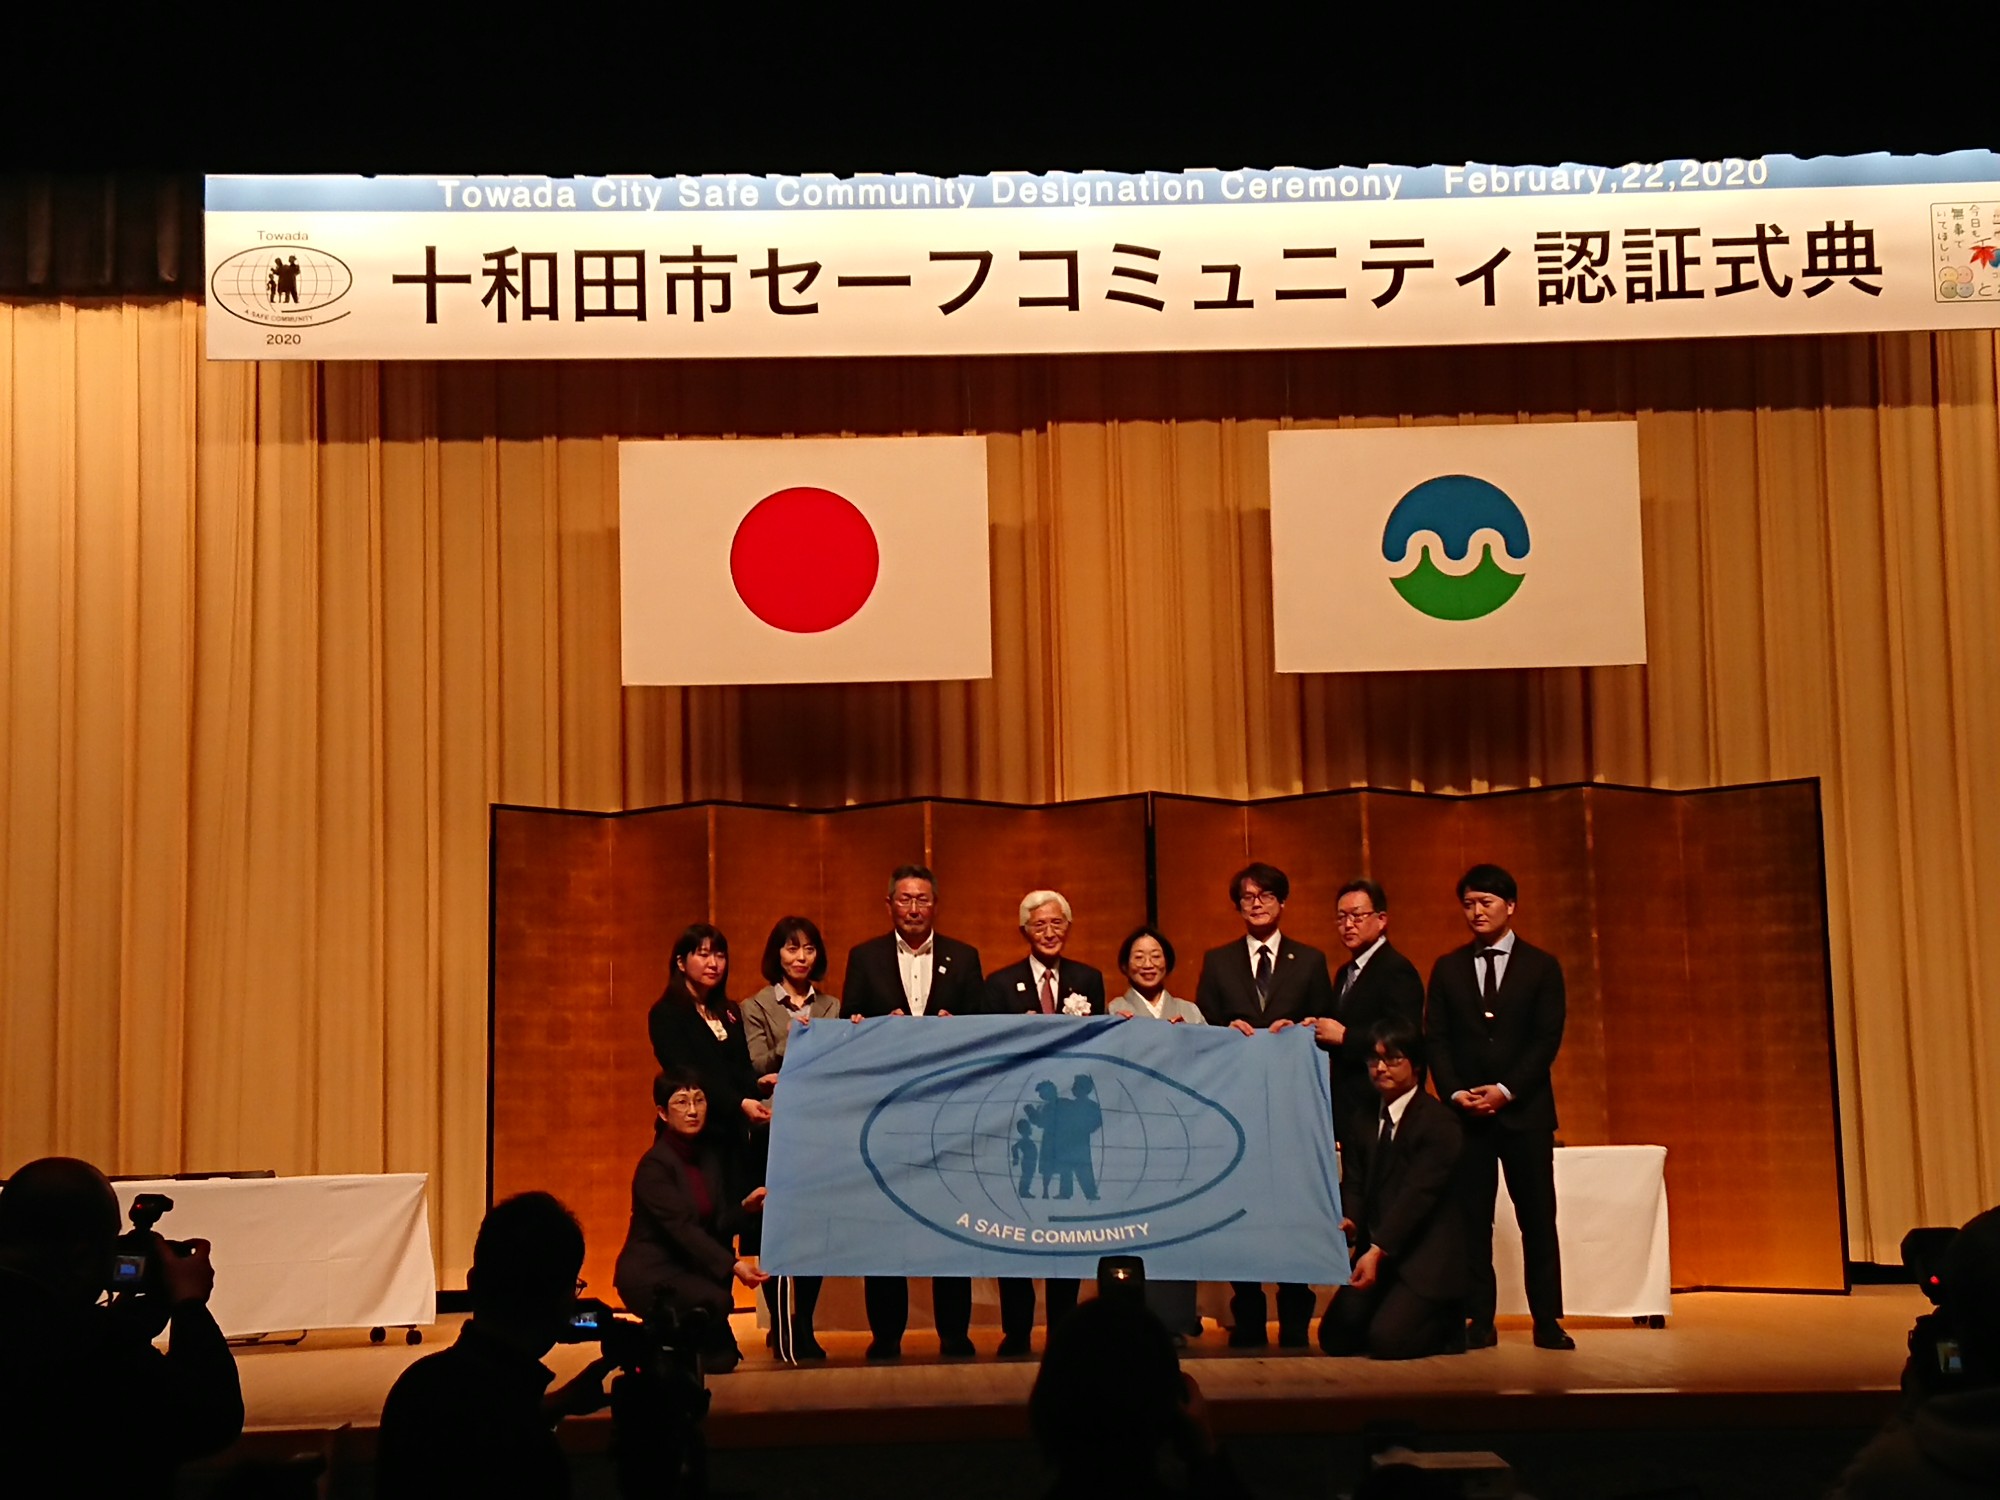 青森県十和田市での認証式典の様子